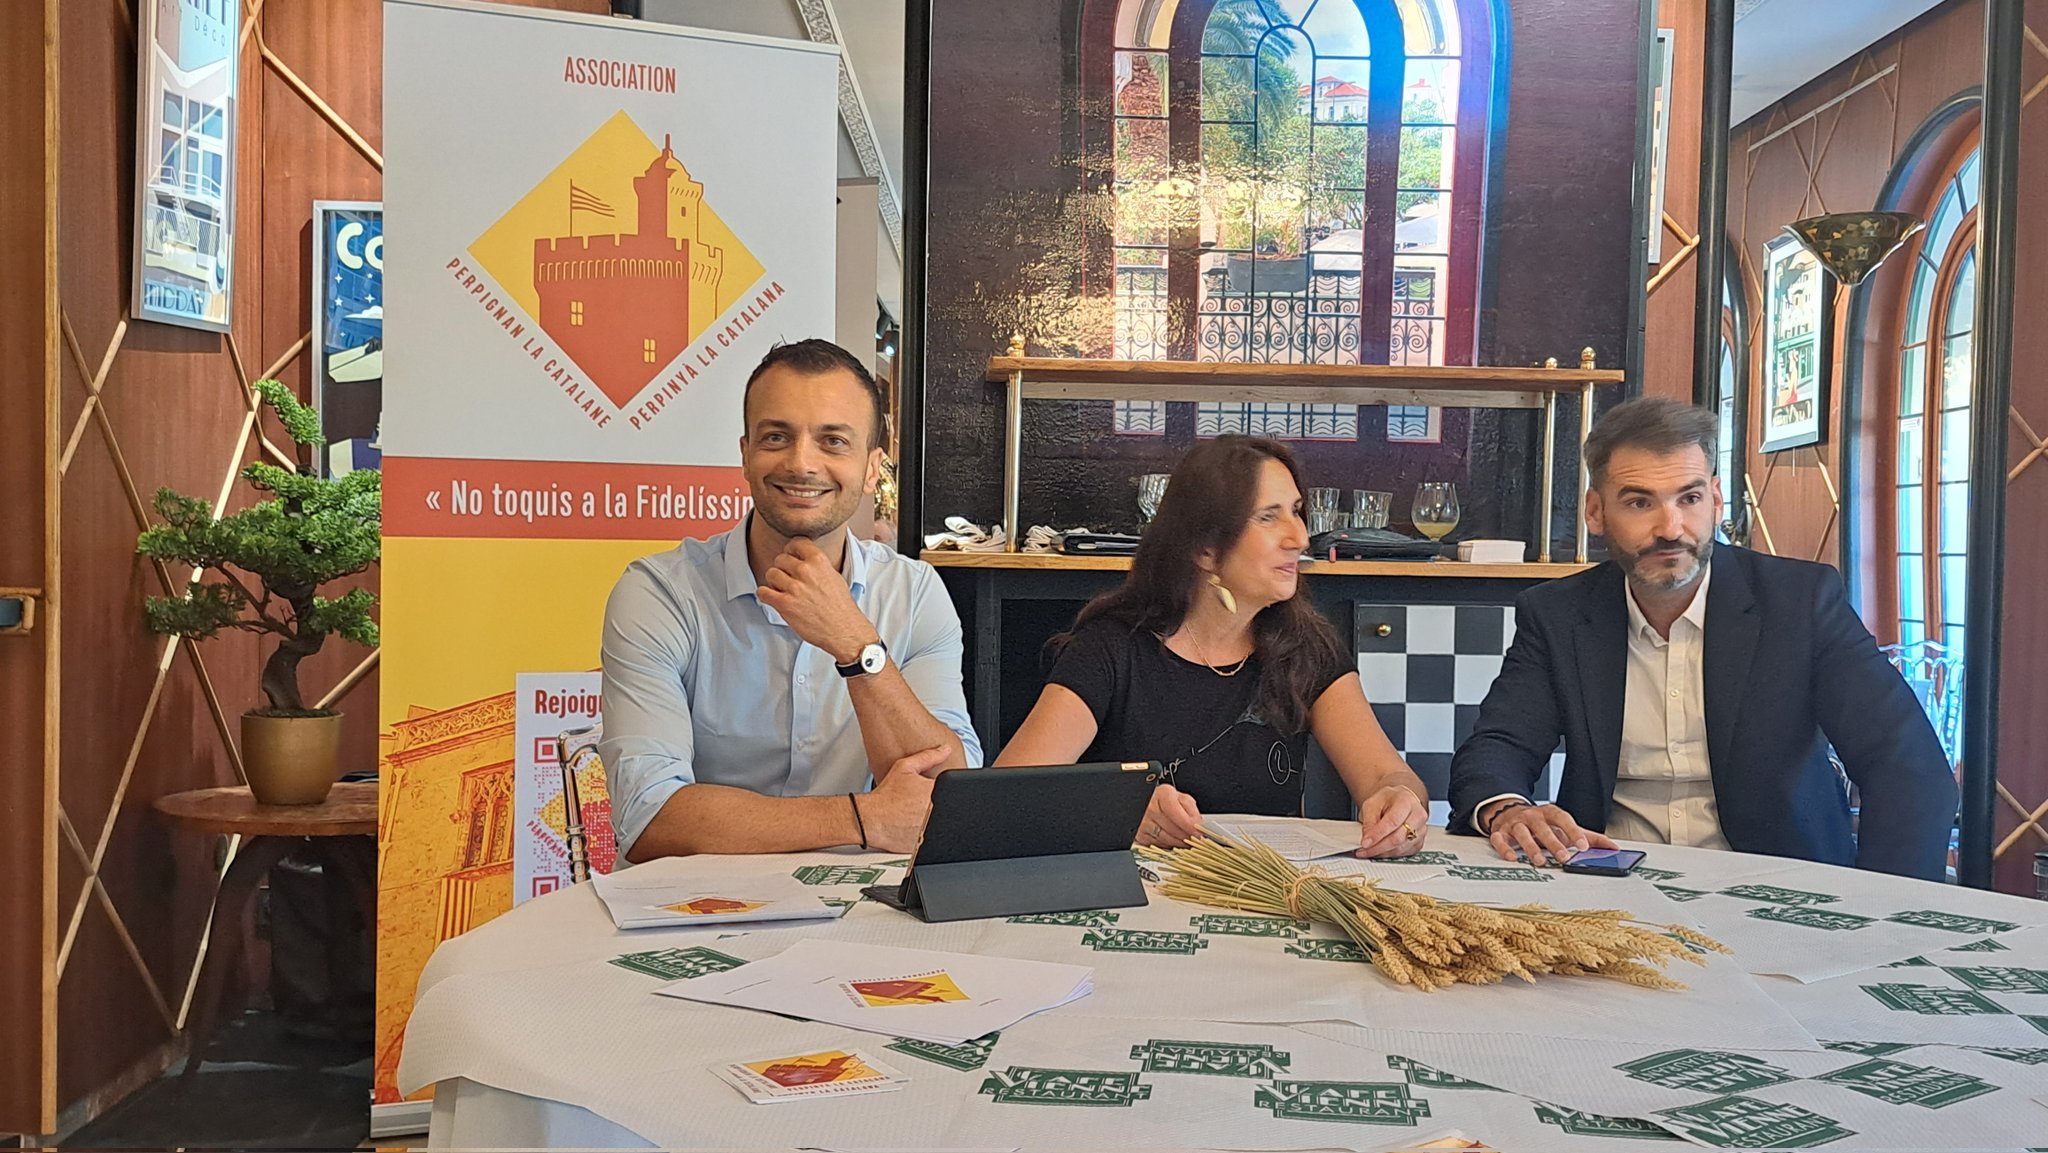 Creen l'associació "Perpinyà la Catalana" per rellançar la catalanitat de la ciutat